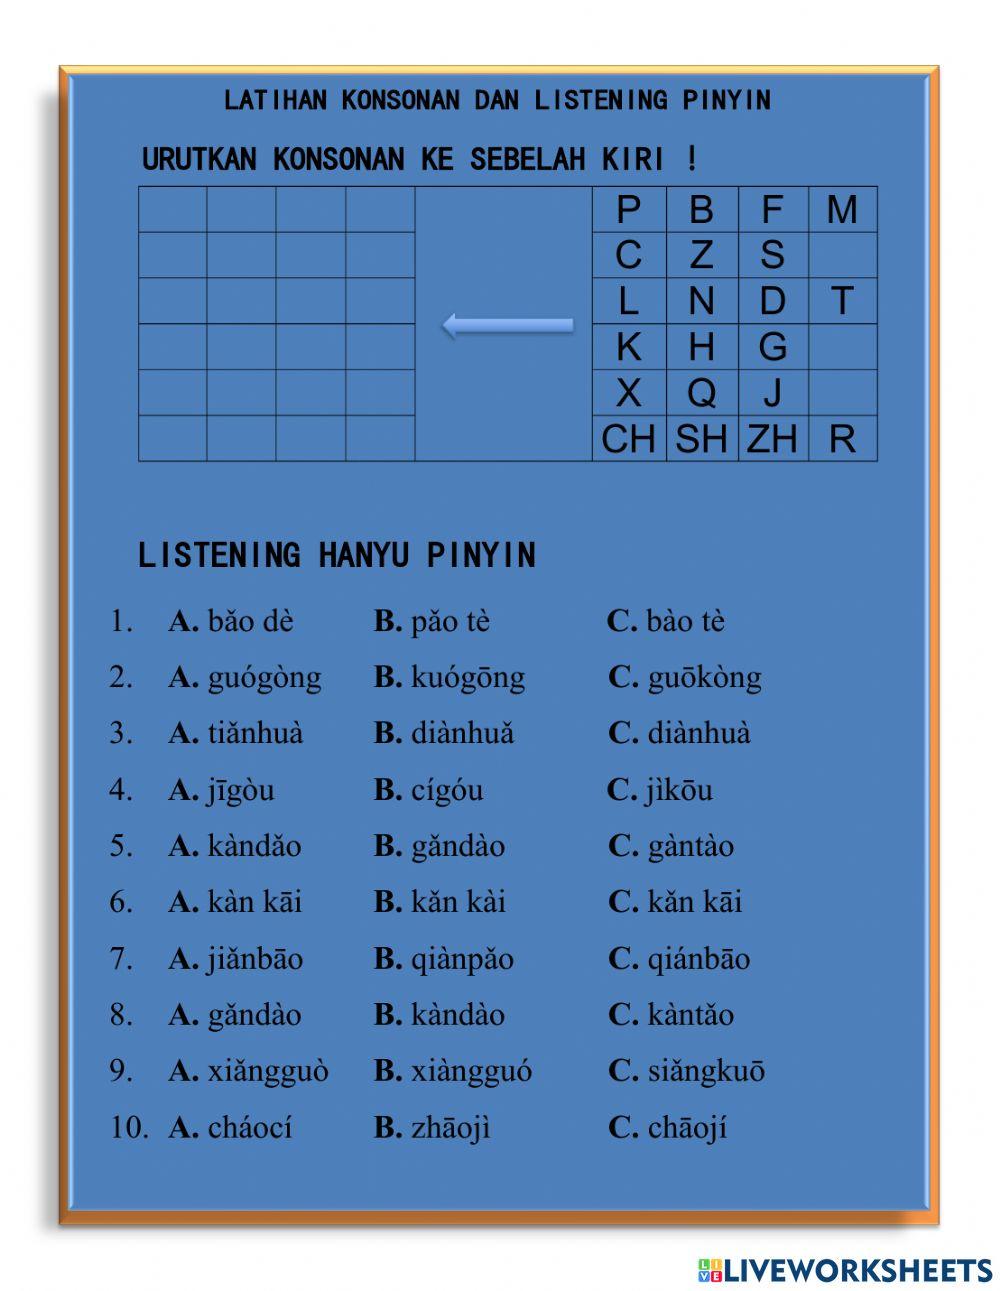 Latihan konsonan dan pinyin kelas 10 SMA